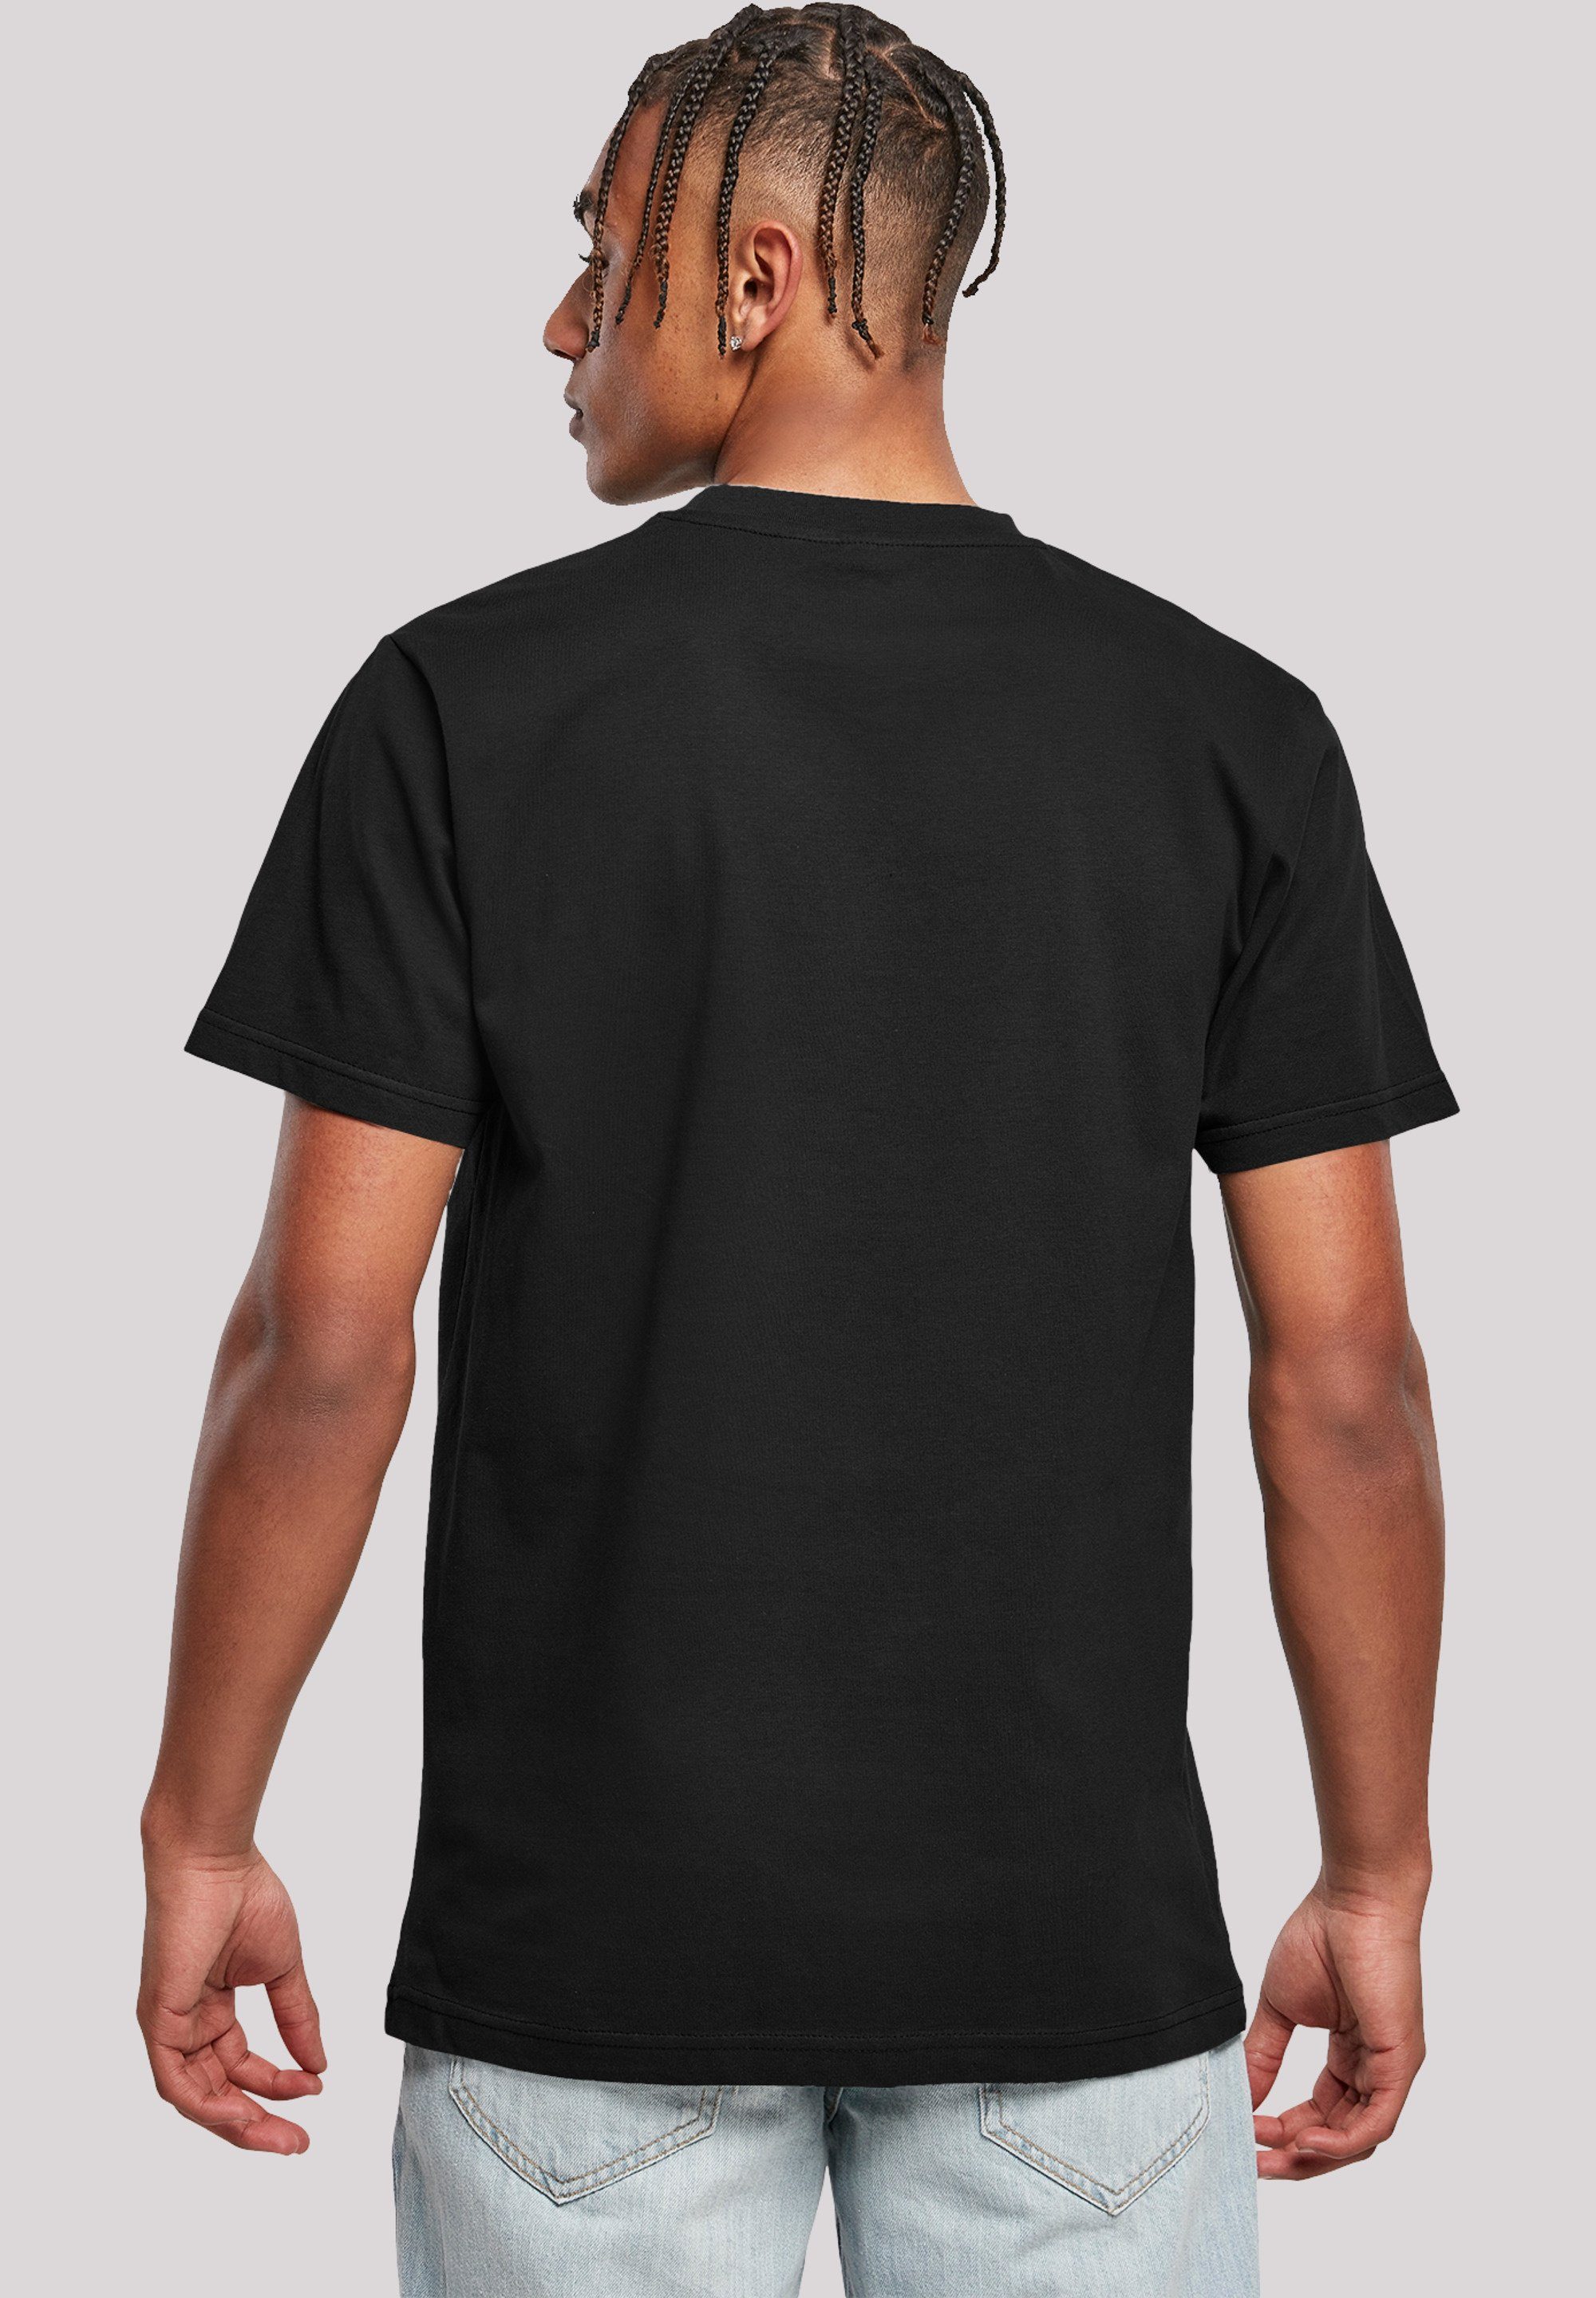 Jugendwort T-Shirt 2022, schwarz F4NT4STIC Slay slang